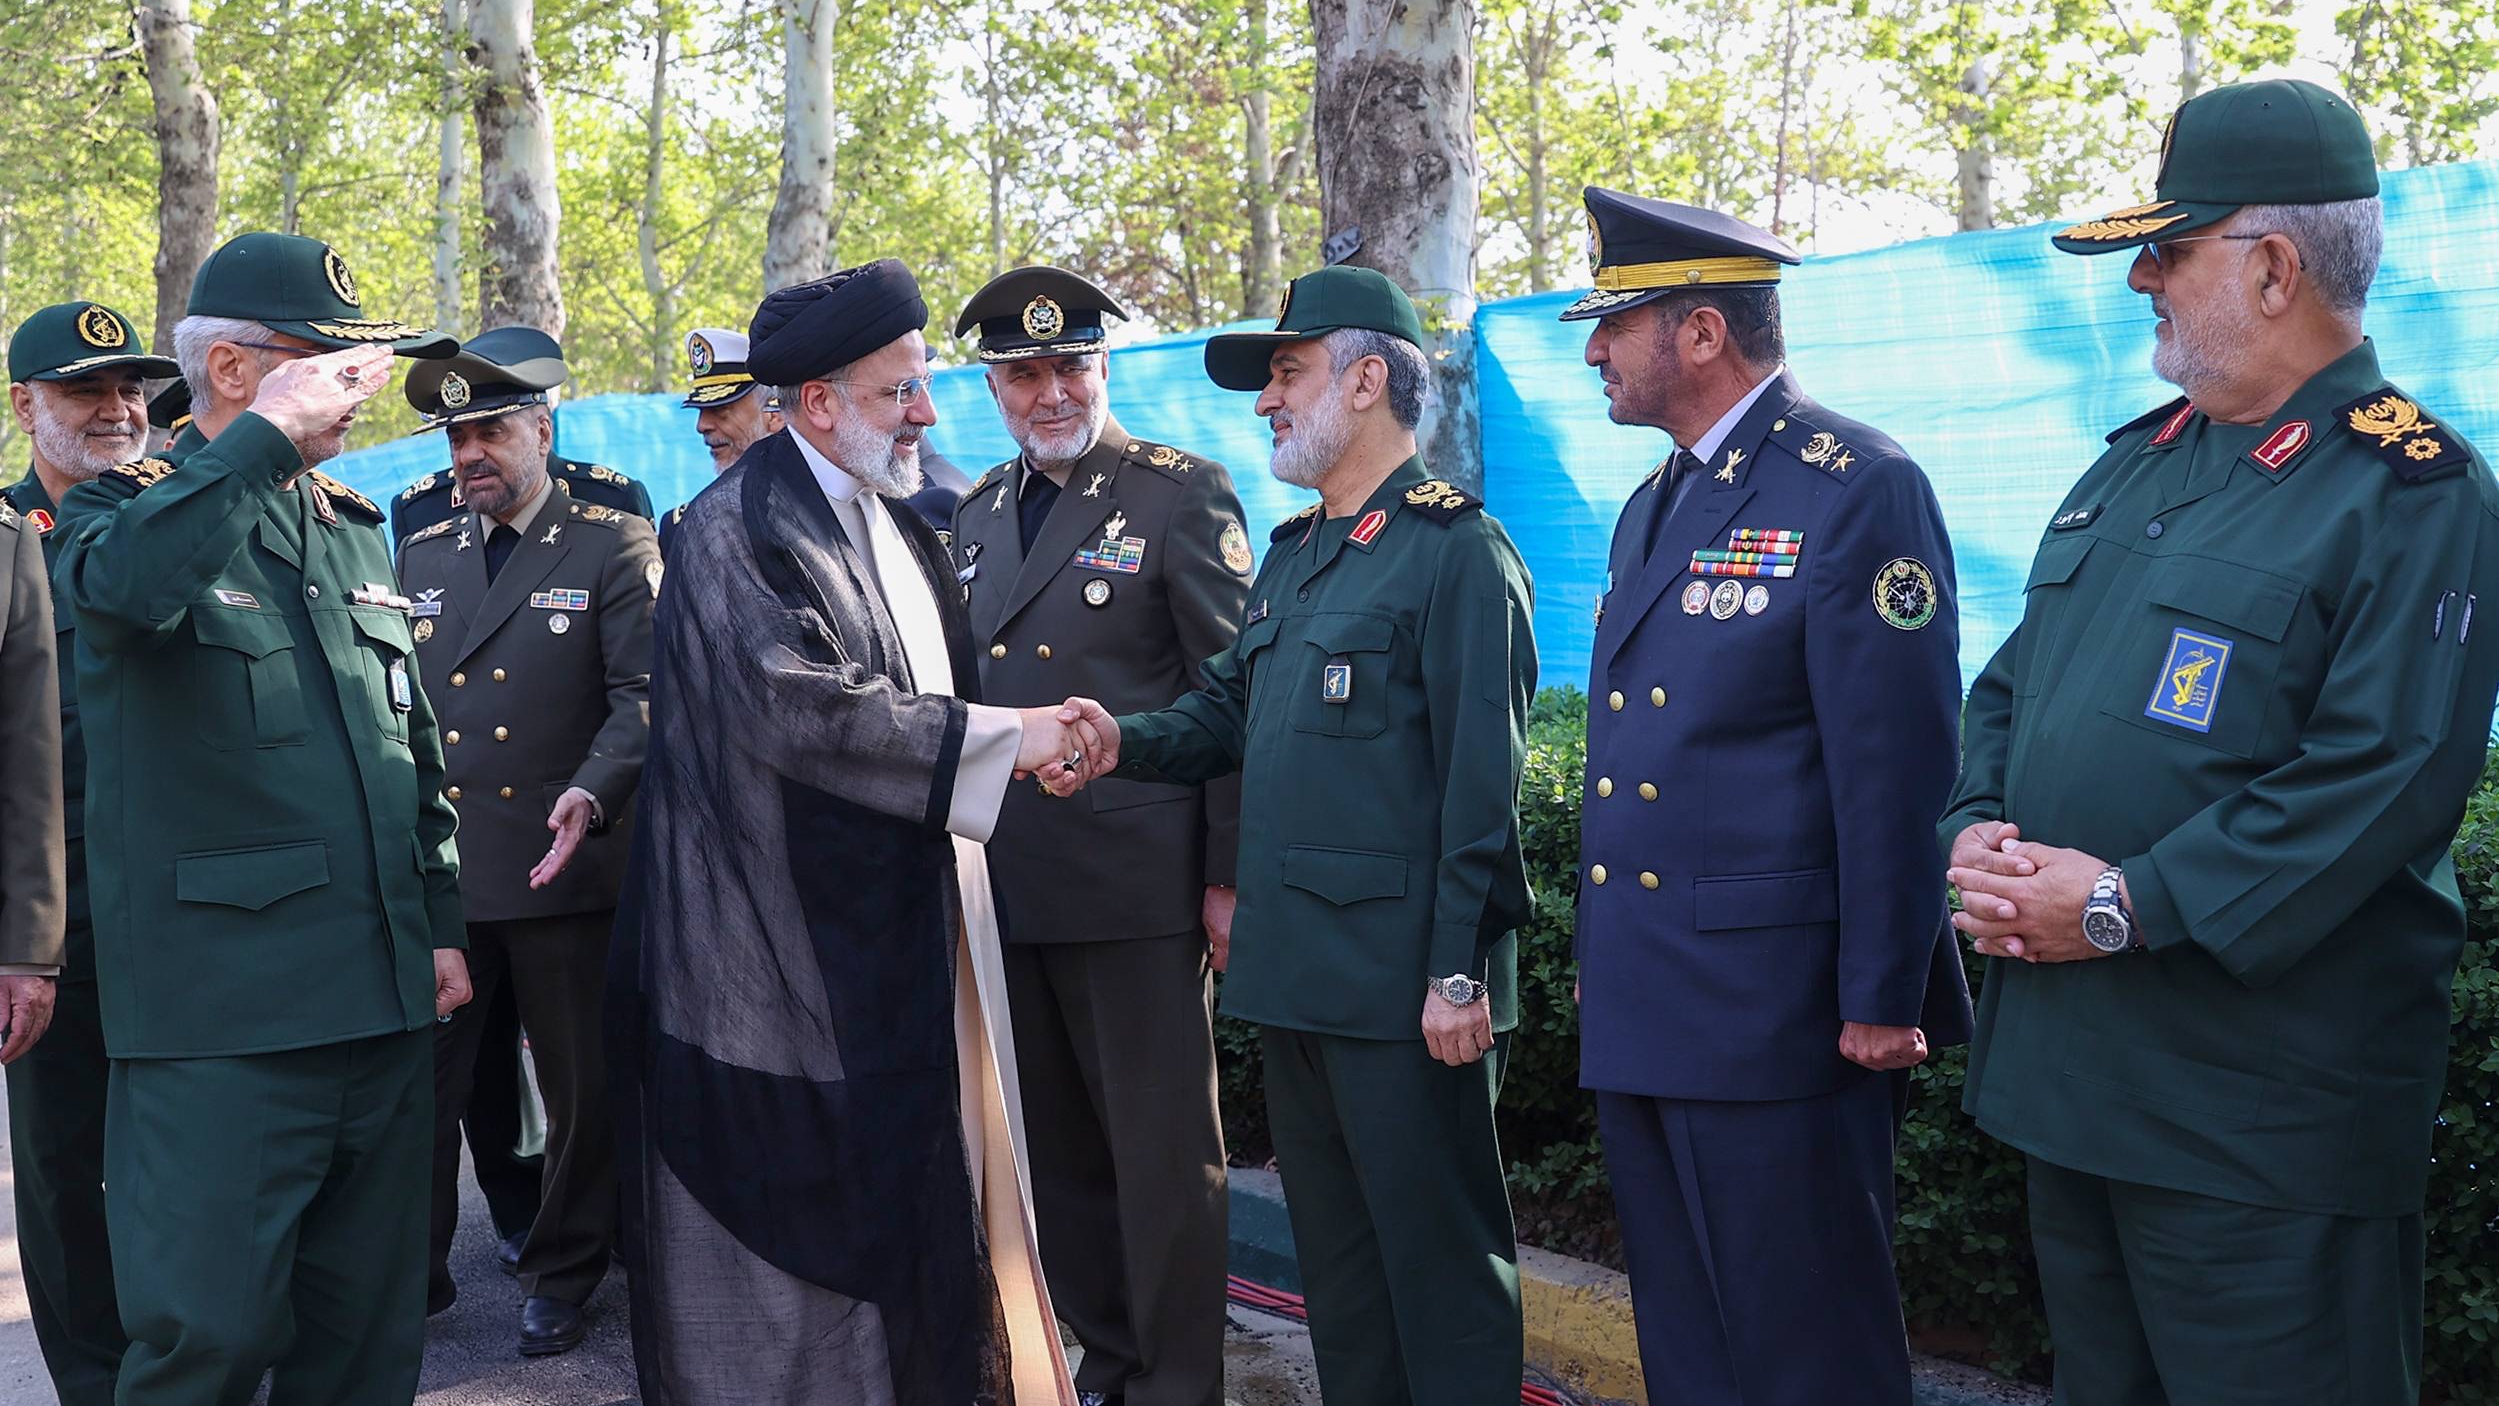 إبراهيم رئيسي يتحدث إلى قائد الوحدة الصاروخية في «الحرس الثوري» أمير علي حاجي زاده